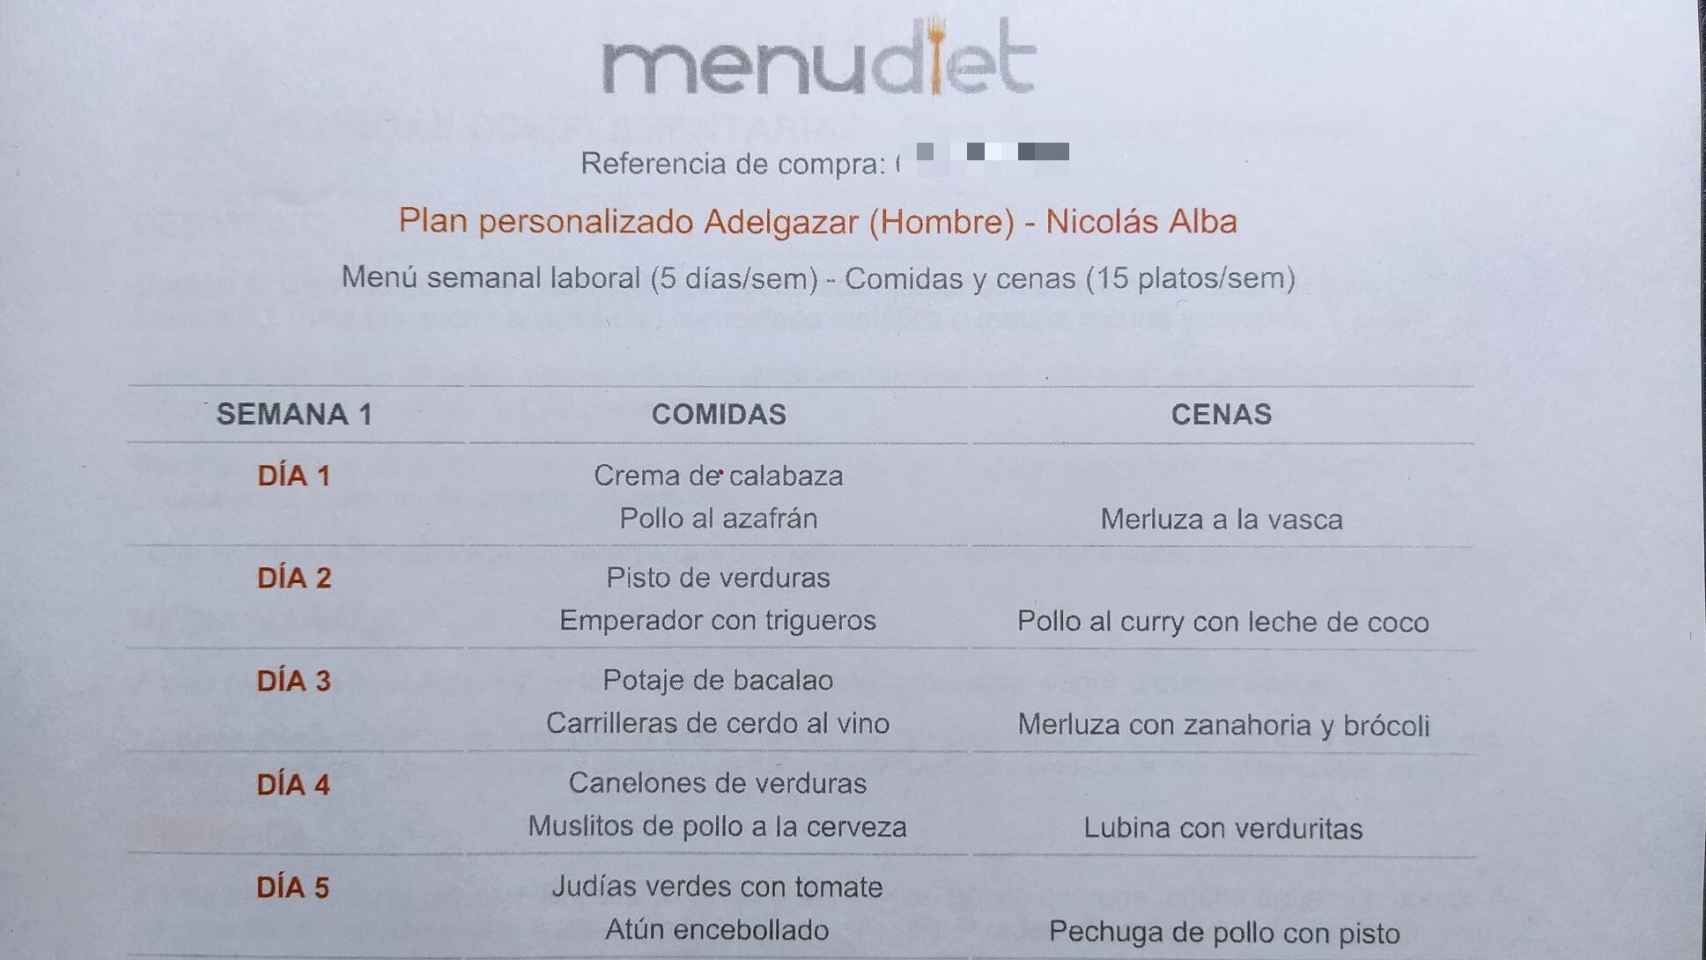 El menú que diseñó la nutricionista Cynthia Rodríguez para mi plan de adelgazamiento.